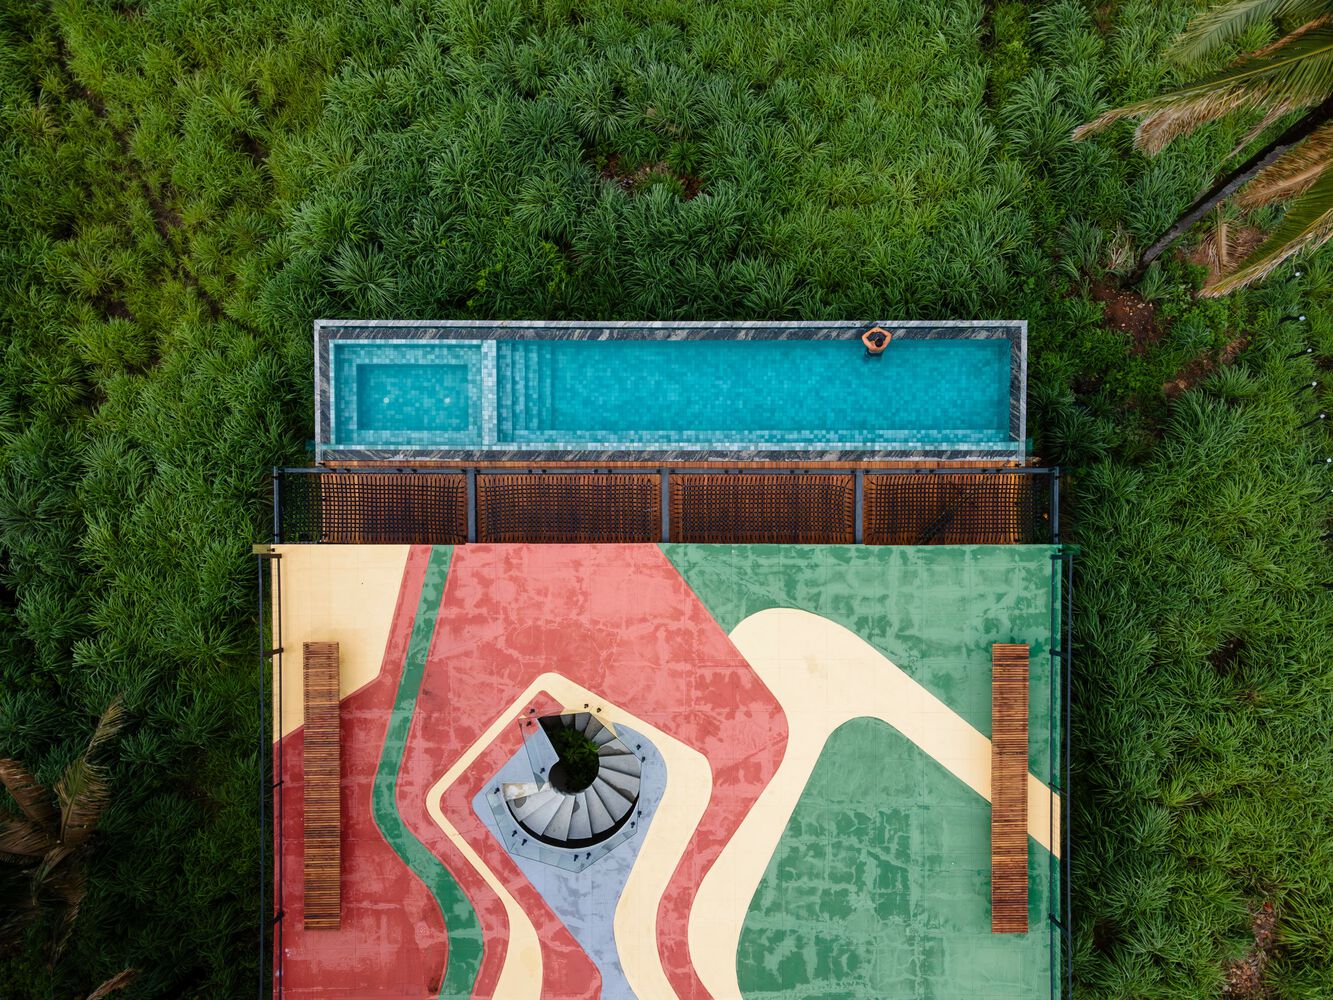 הבית עם הגג הצבעוני, בברזיל